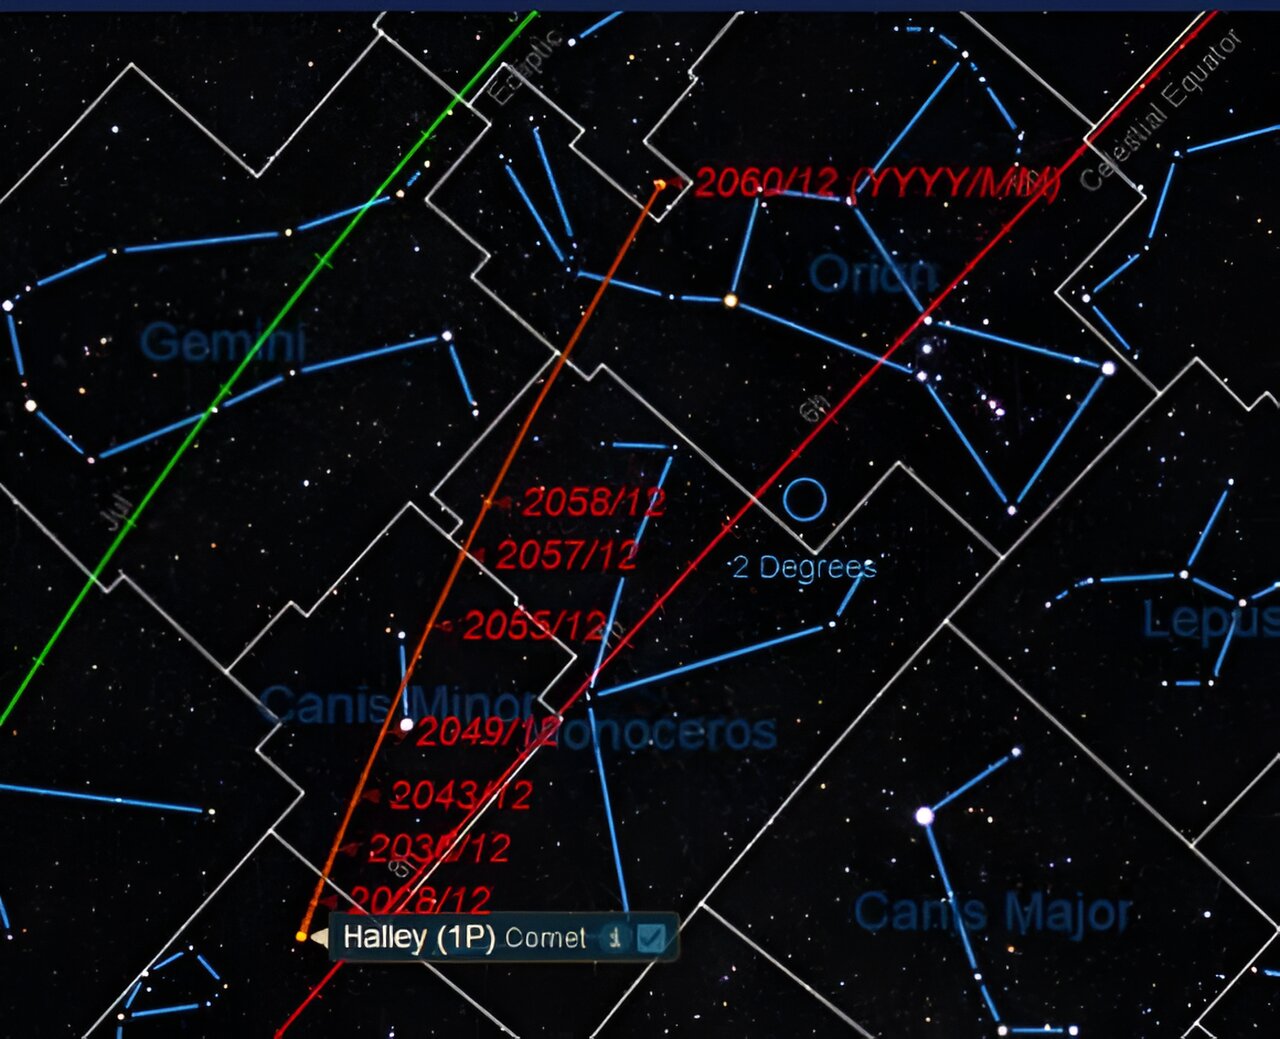 著名的哈雷彗星将于本周末通过远日点